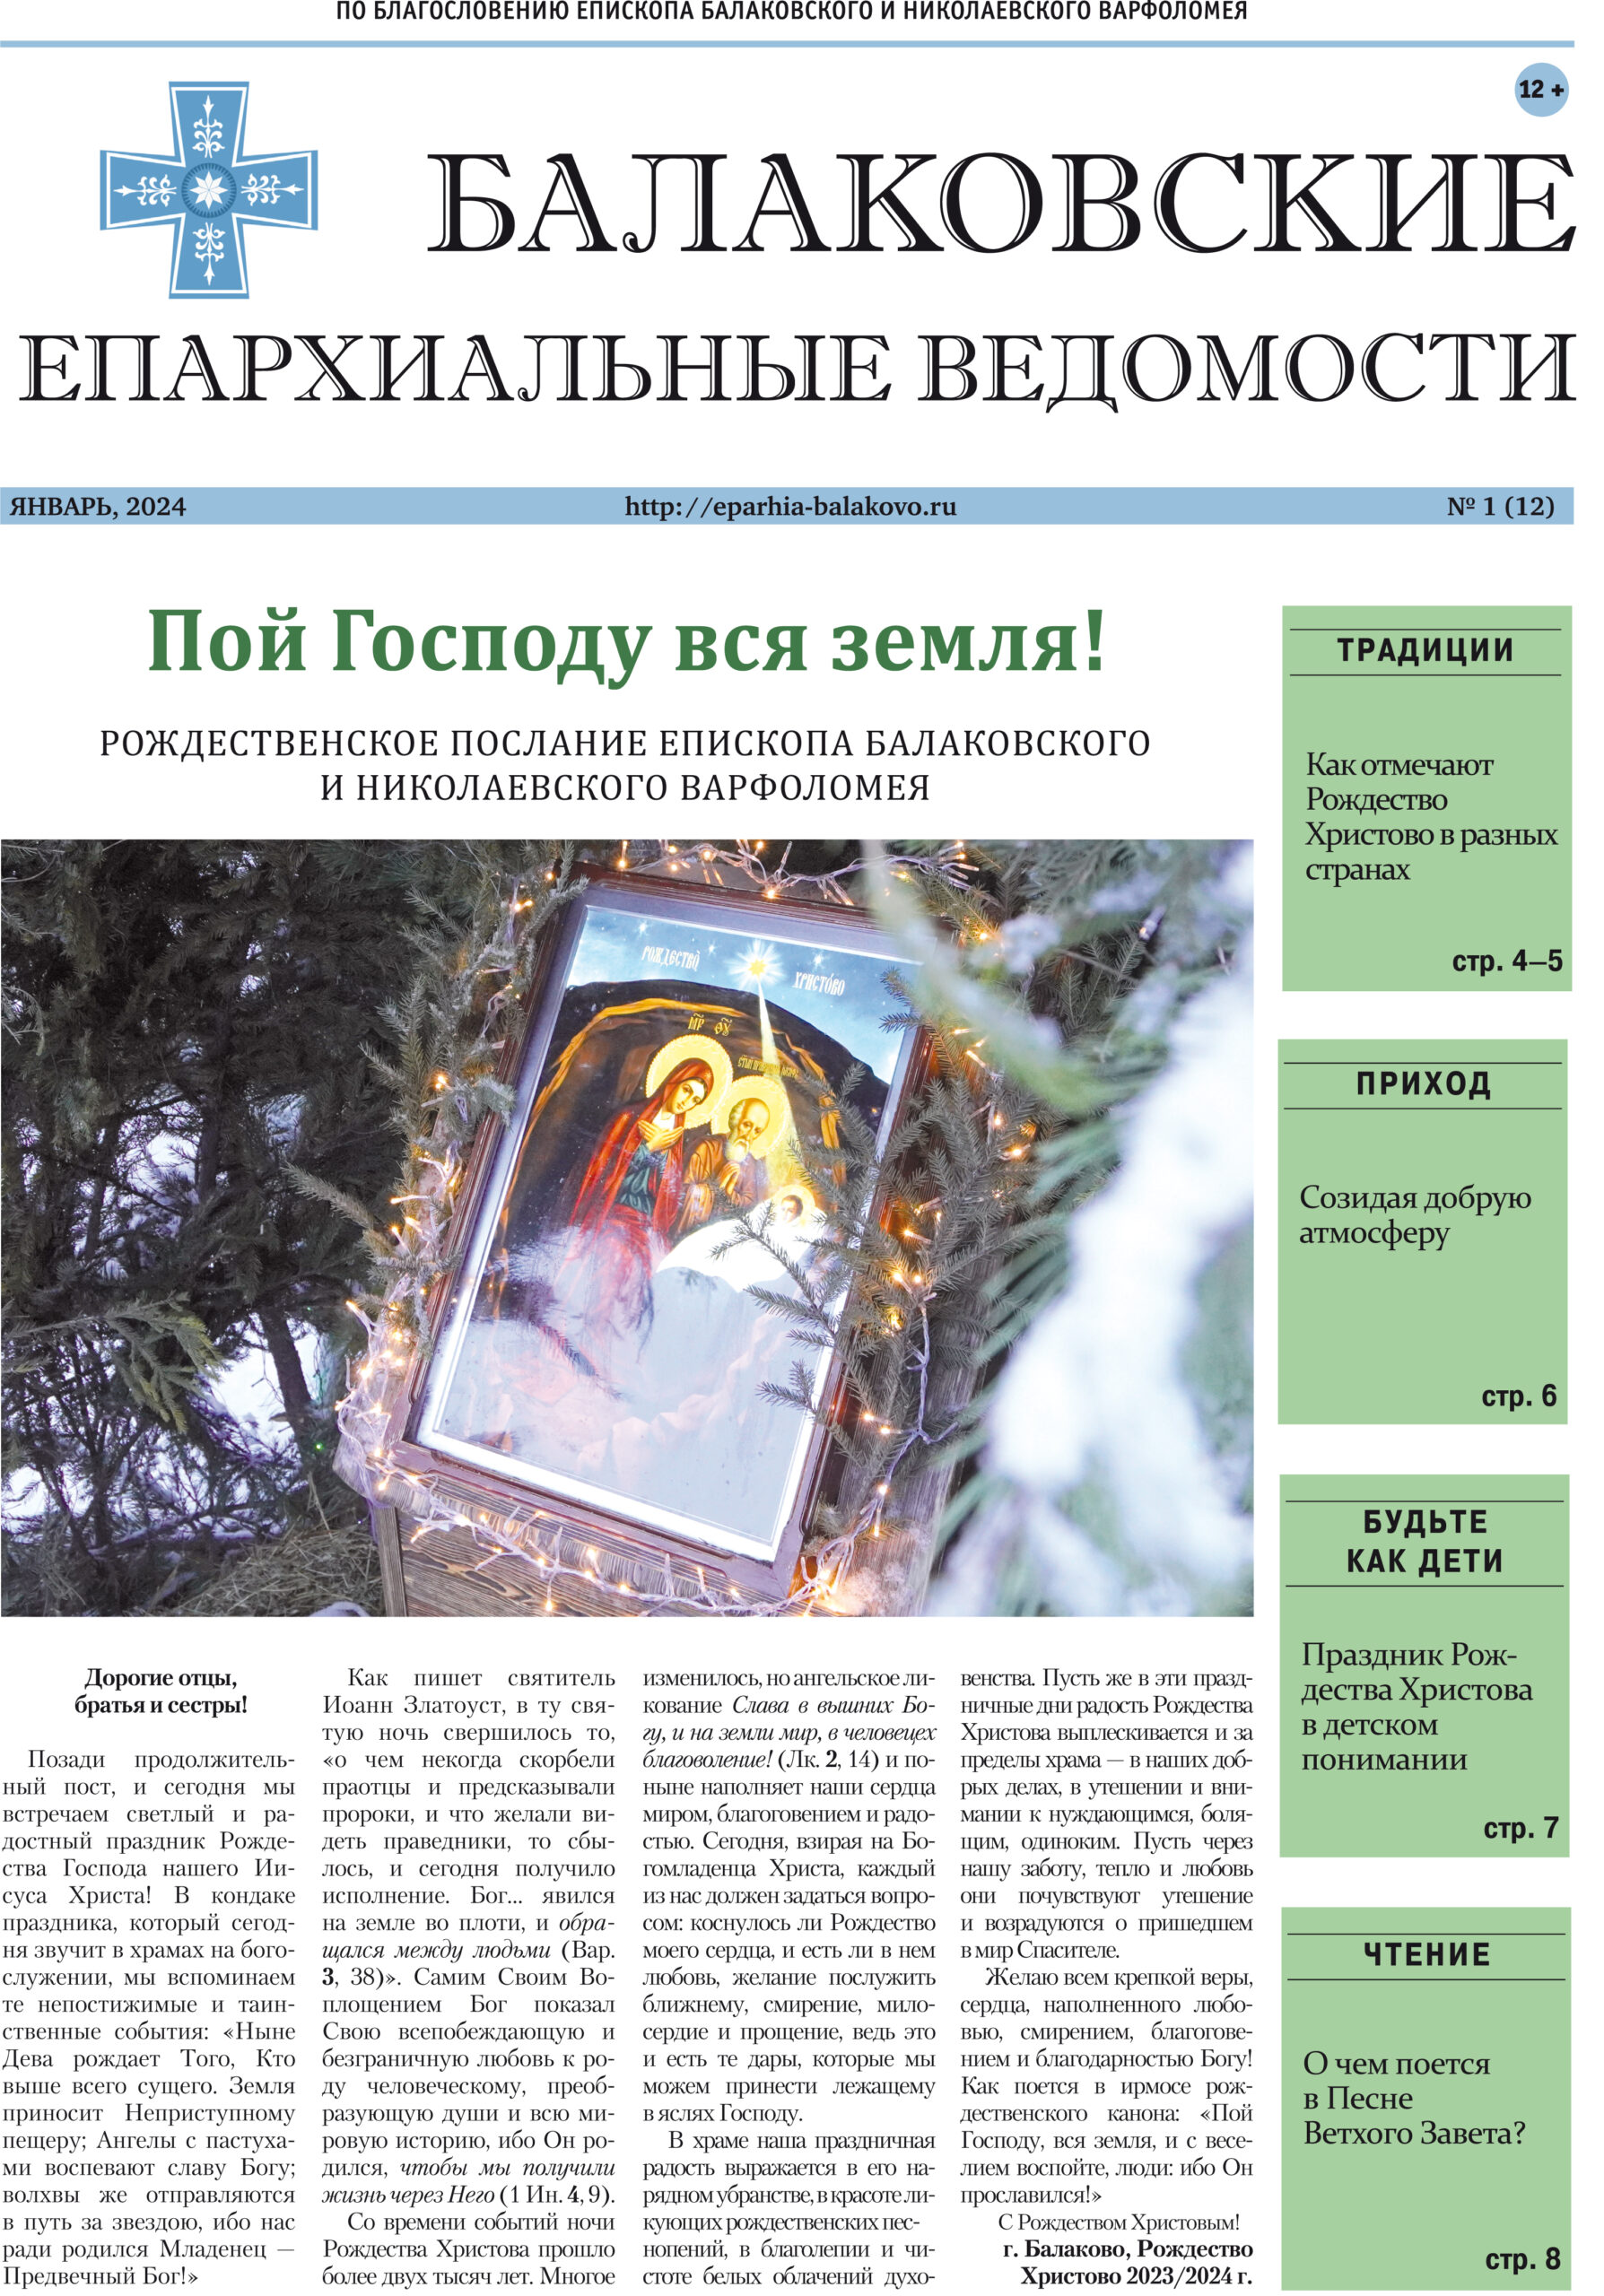 Вышел рождественский выпуск газеты «Балаковские епархиальные ведомости»